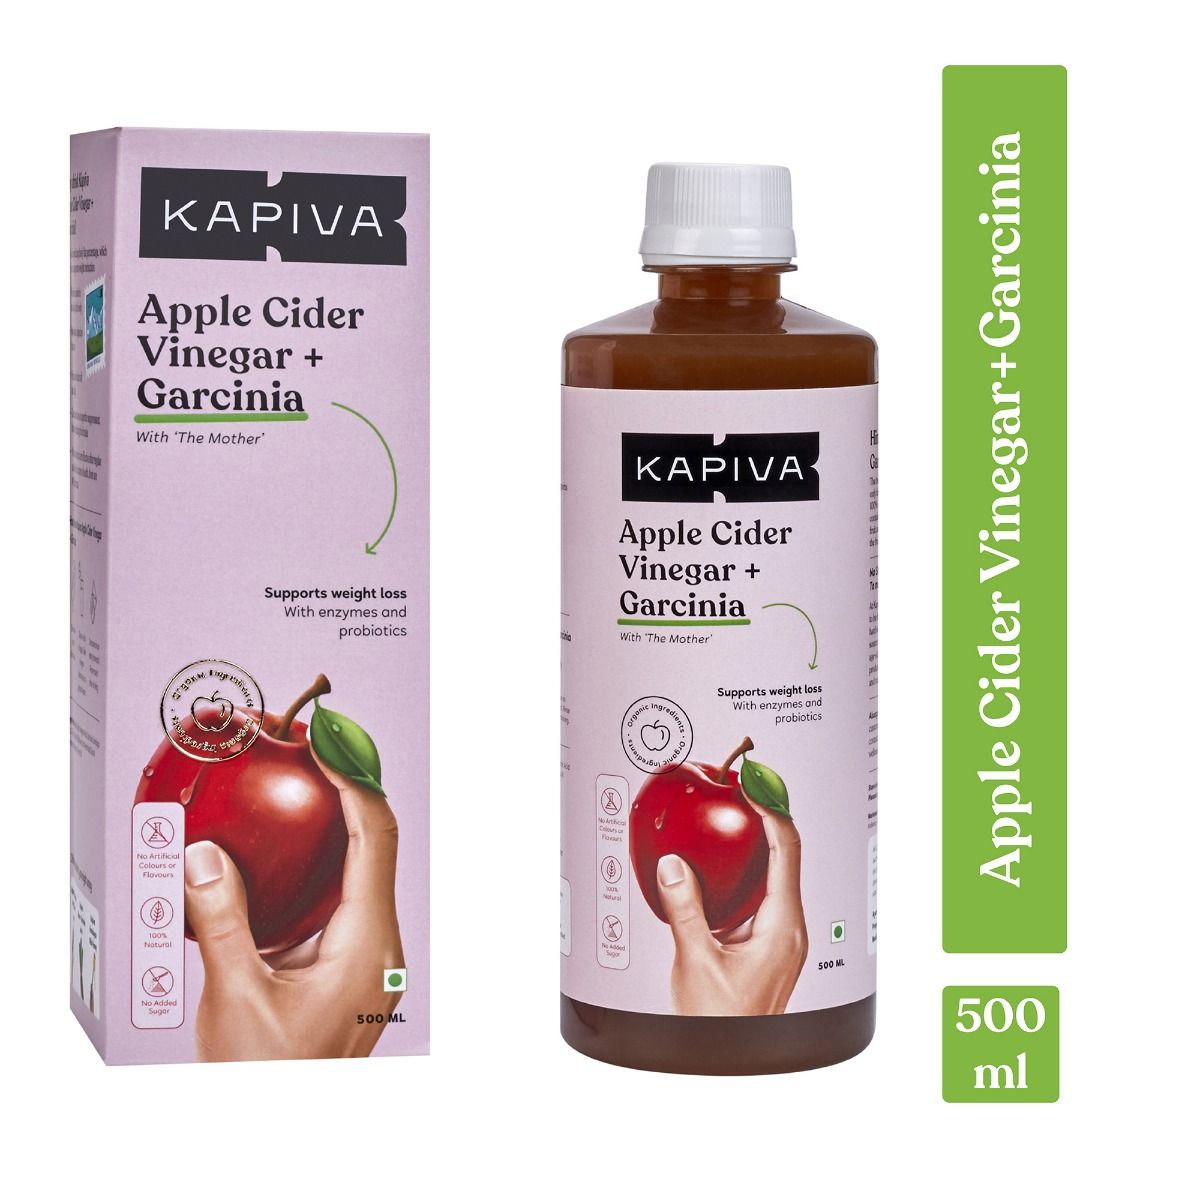 Buy Kapiva Apple Cider Vinegar + Garcinia Juice, 500 ml Online